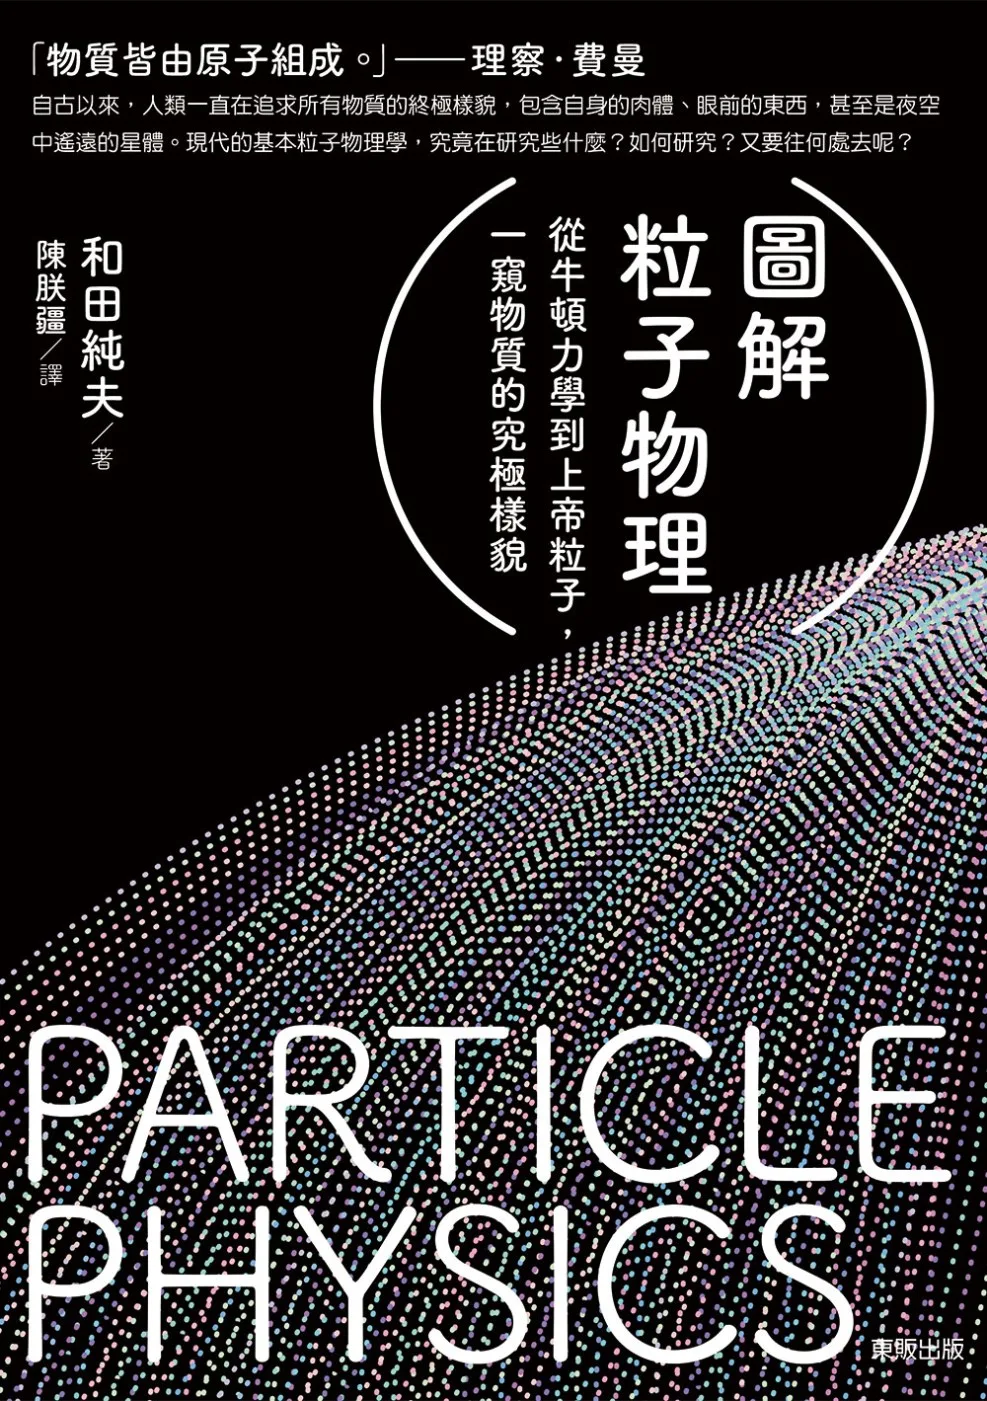 圖解粒子物理：從牛頓力學到上帝粒子，一窺物質的究極樣貌